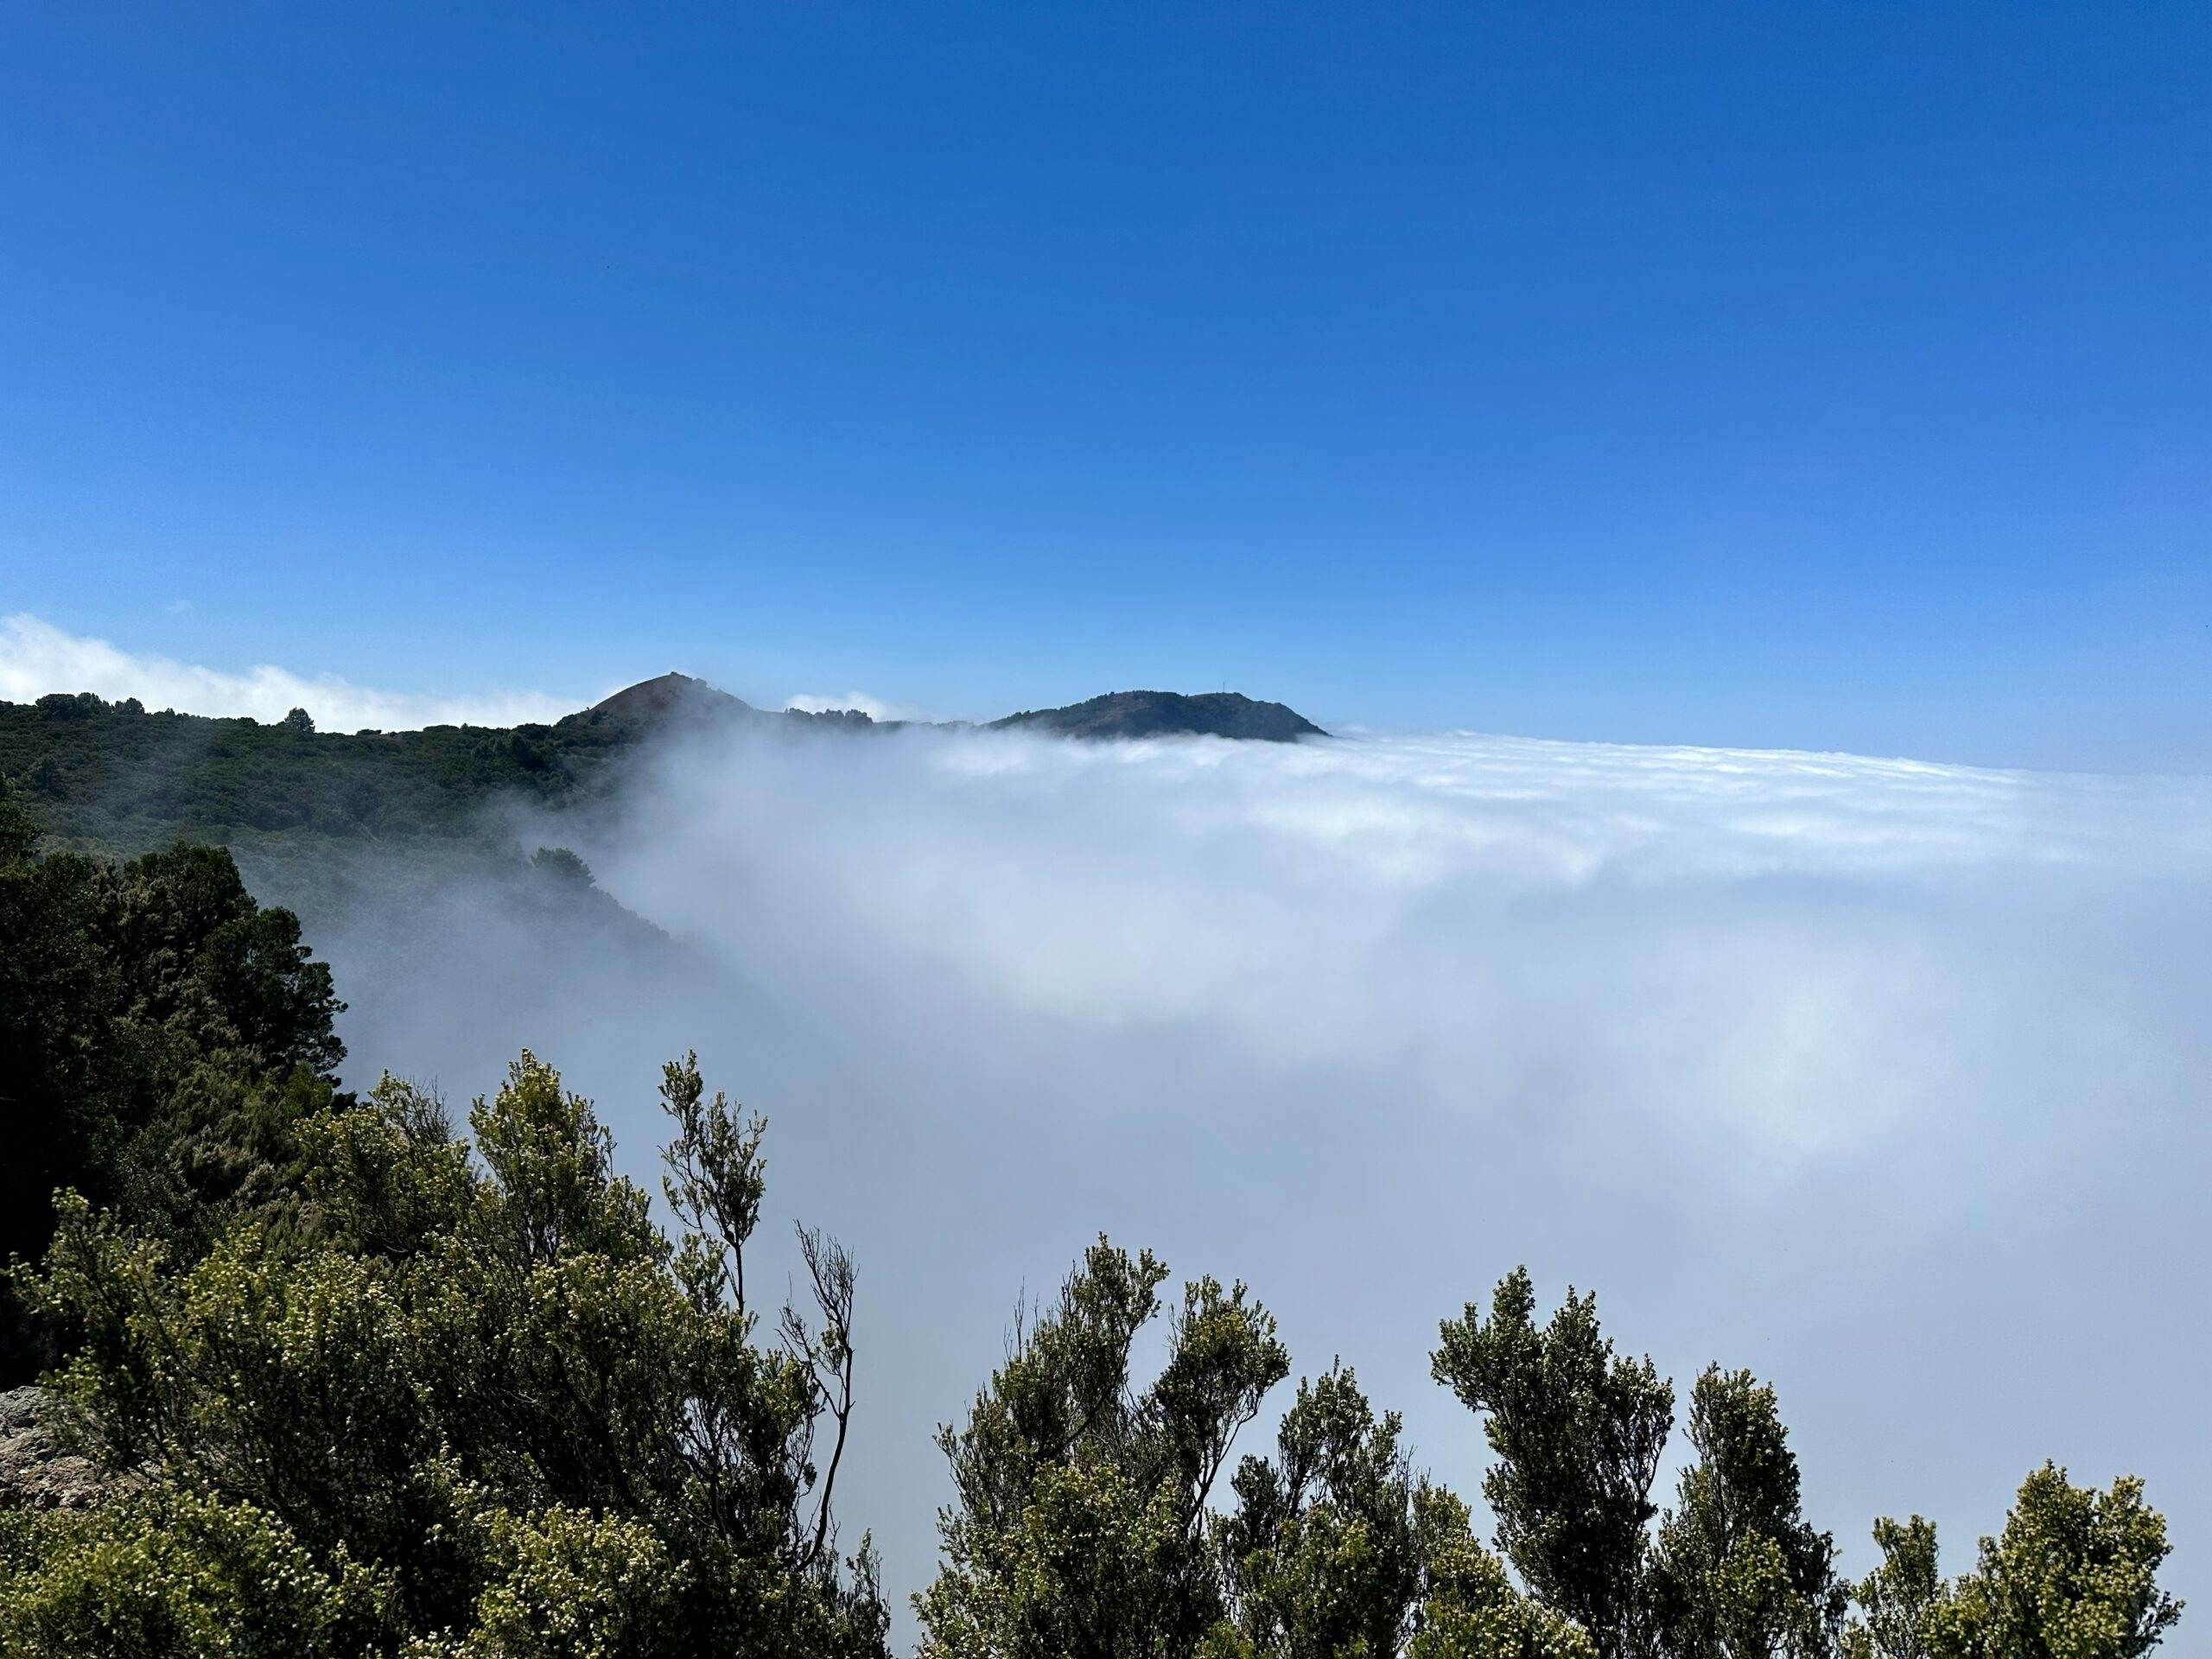 El Hierro - Clouds over the Cumbre - Camino de la Virgen